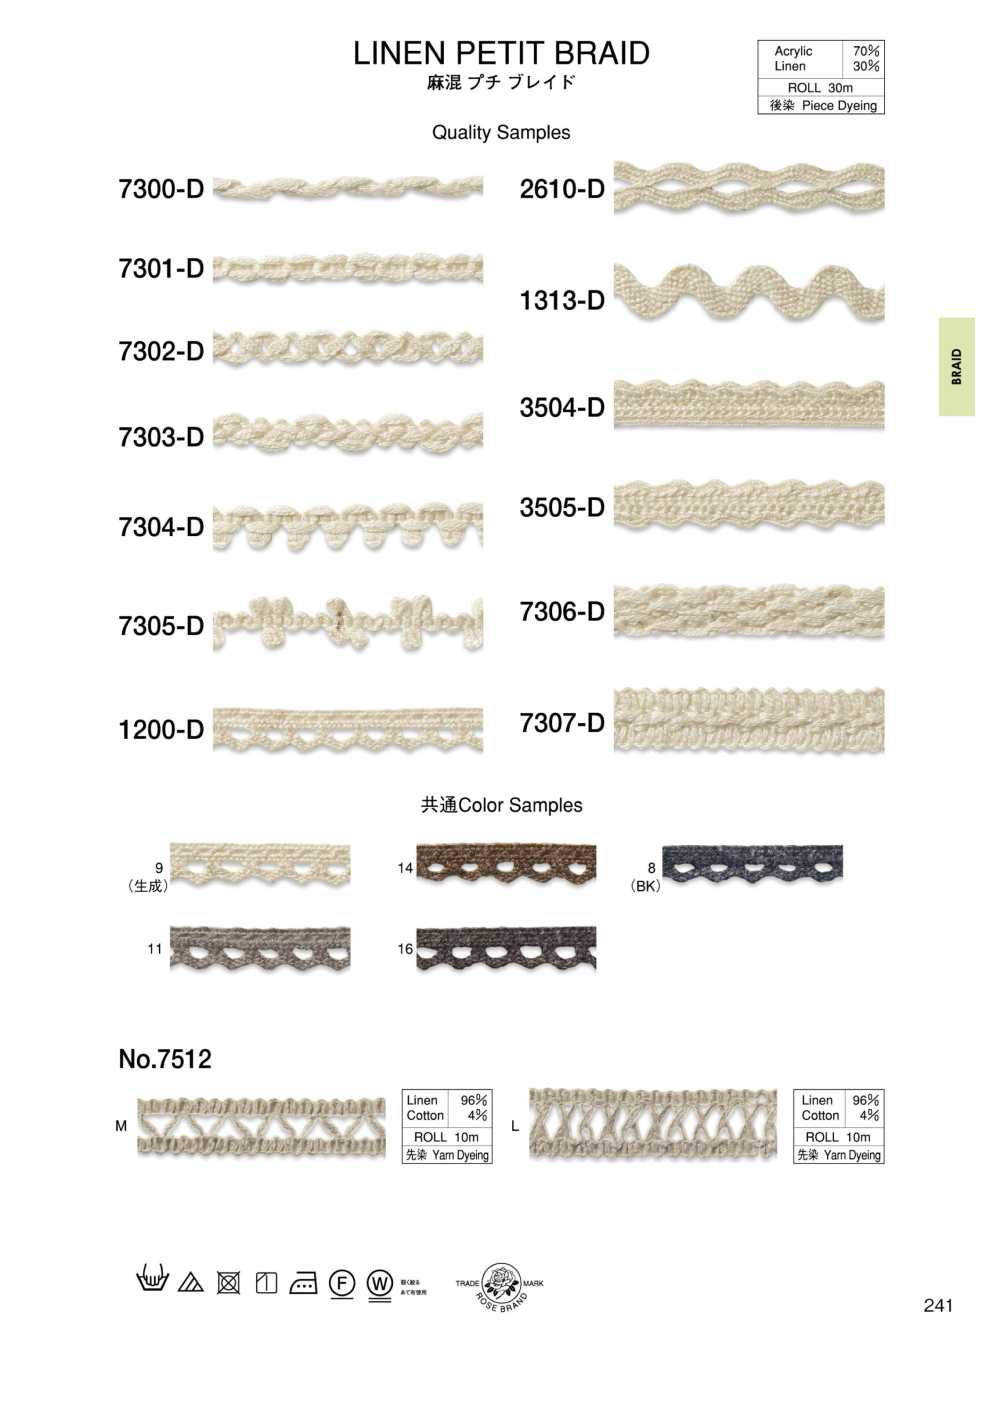 1313-D Linen Blend Petite Braid[Ribbon Tape Cord] ROSE BRAND (Marushin)